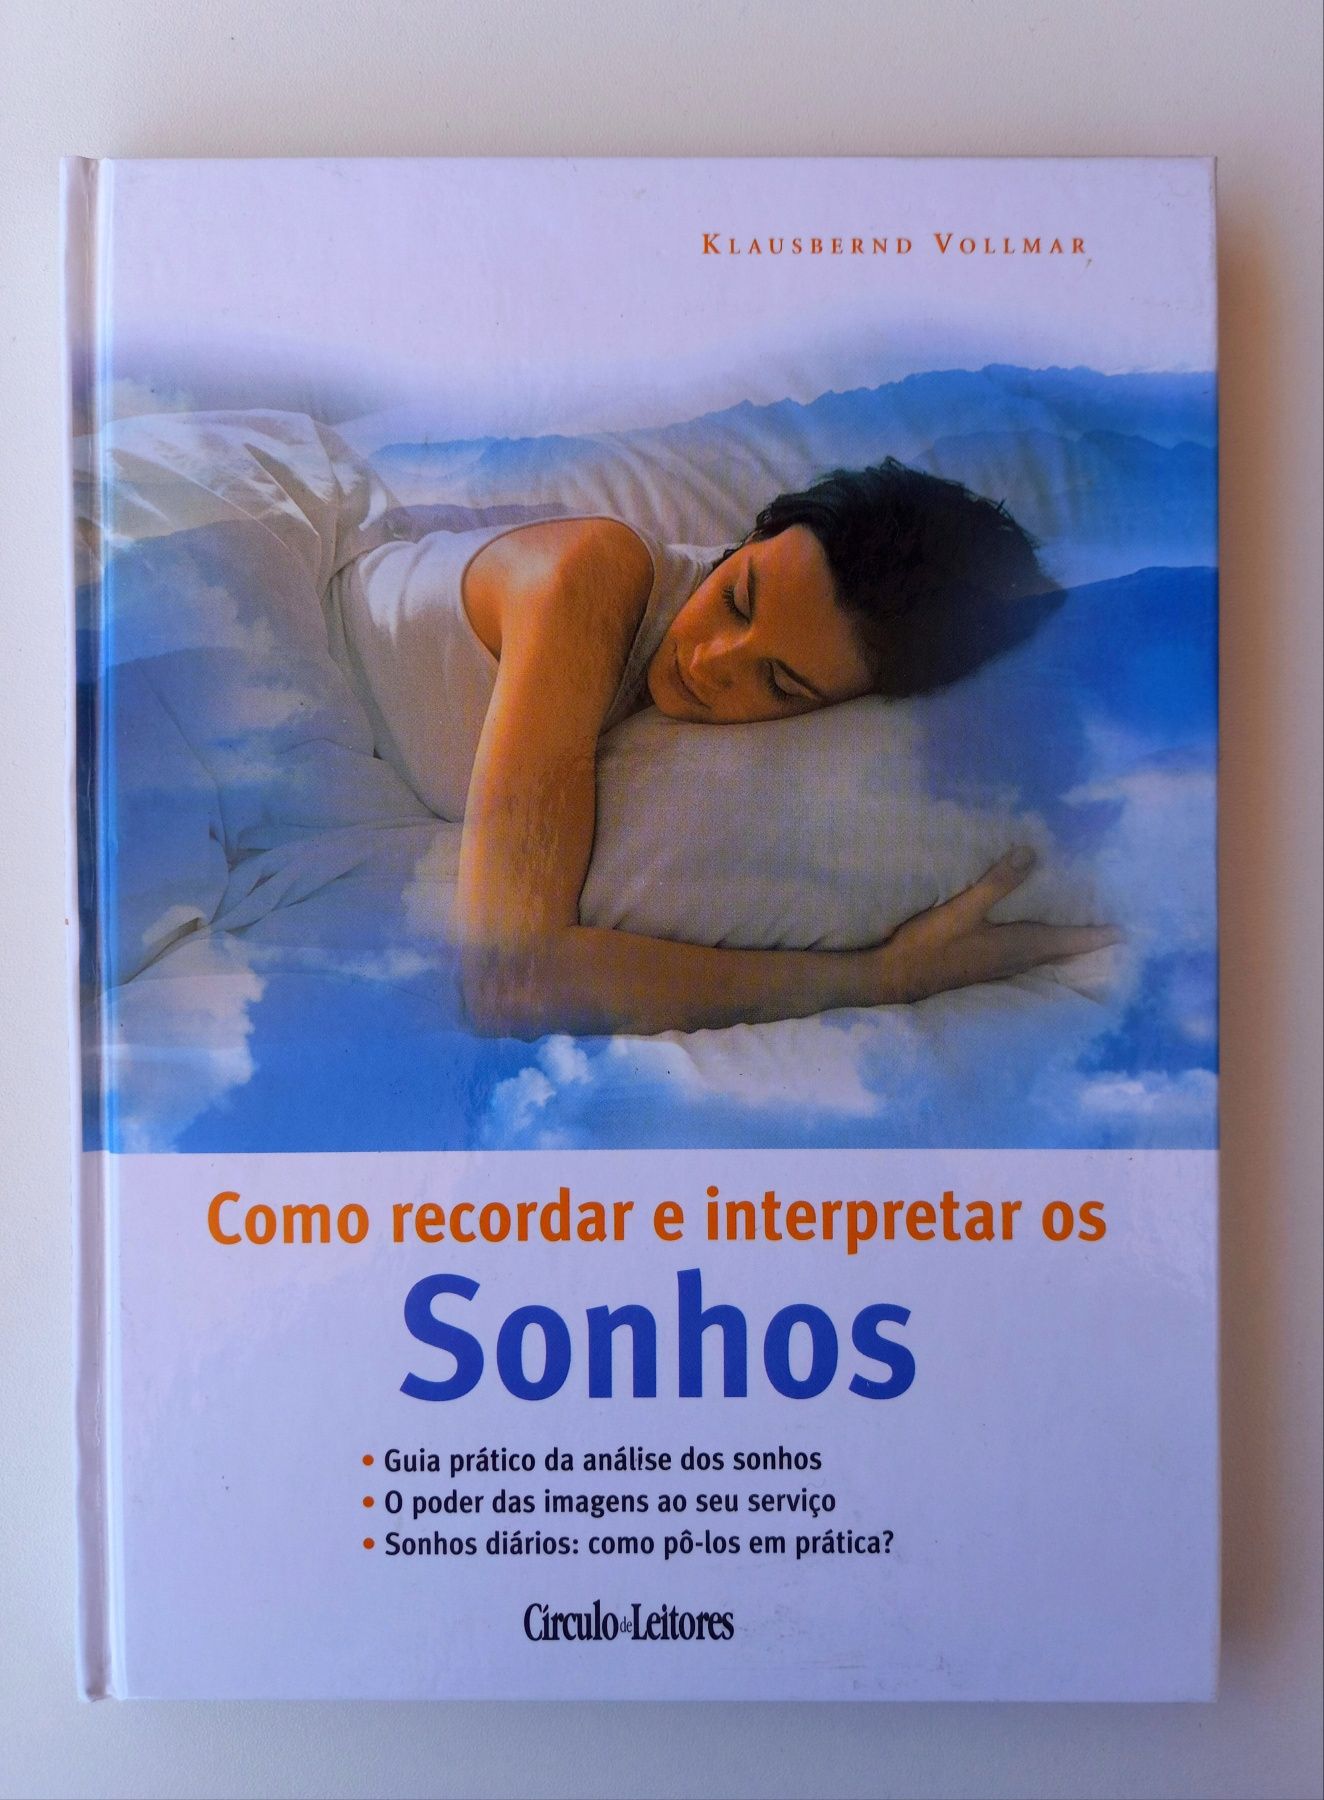 Livro "Como recordar e interpretar os sonhos"